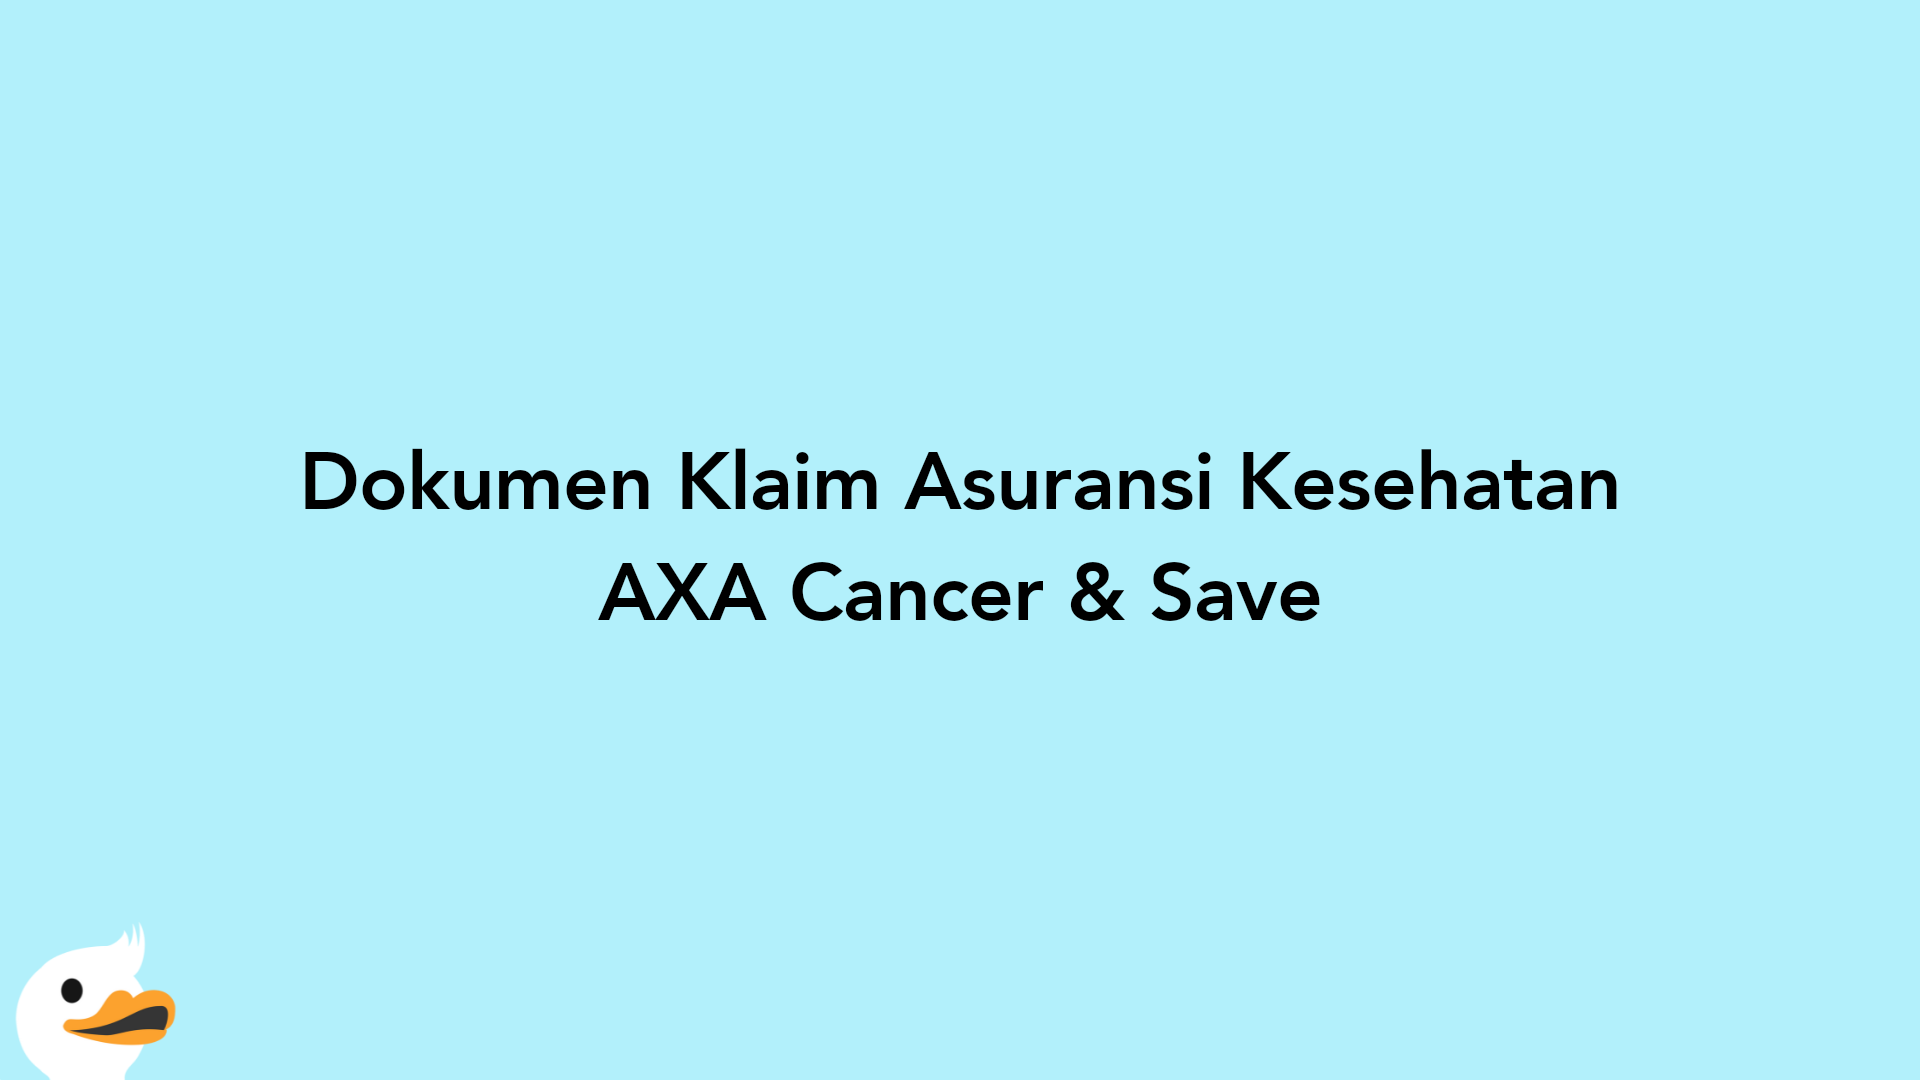 Dokumen Klaim Asuransi Kesehatan AXA Cancer & Save